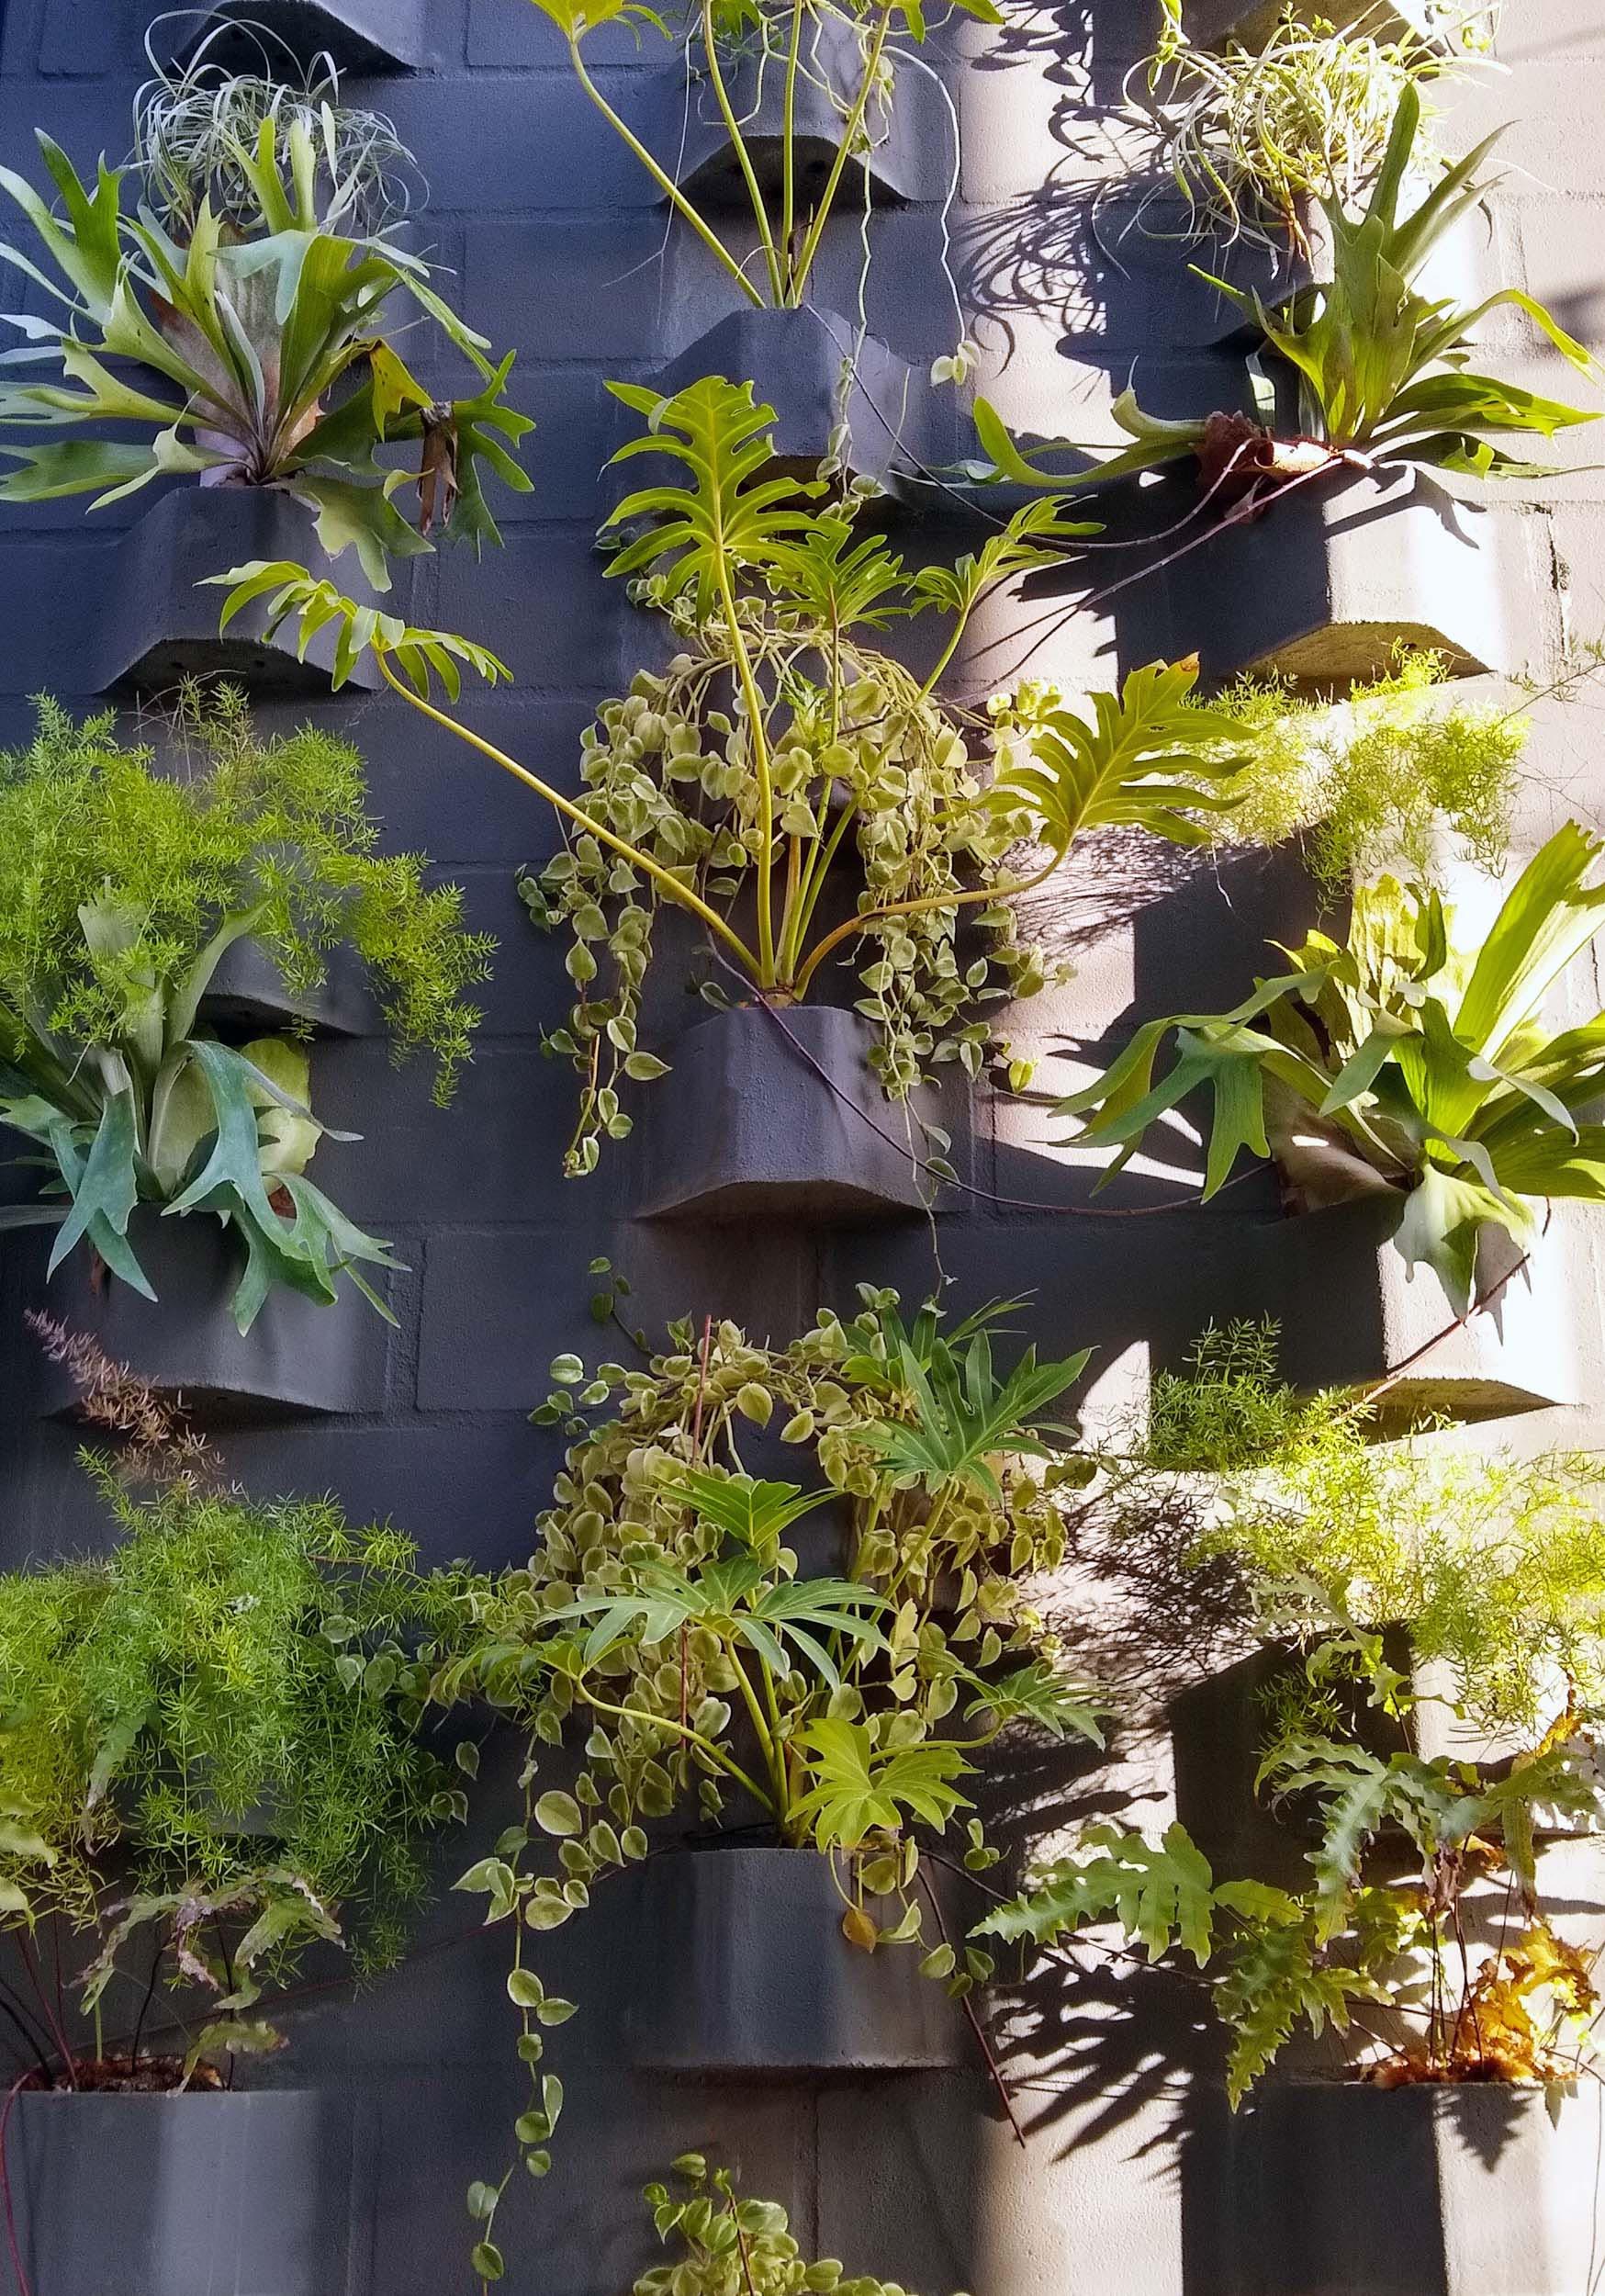 DIY climbing garden for herbs